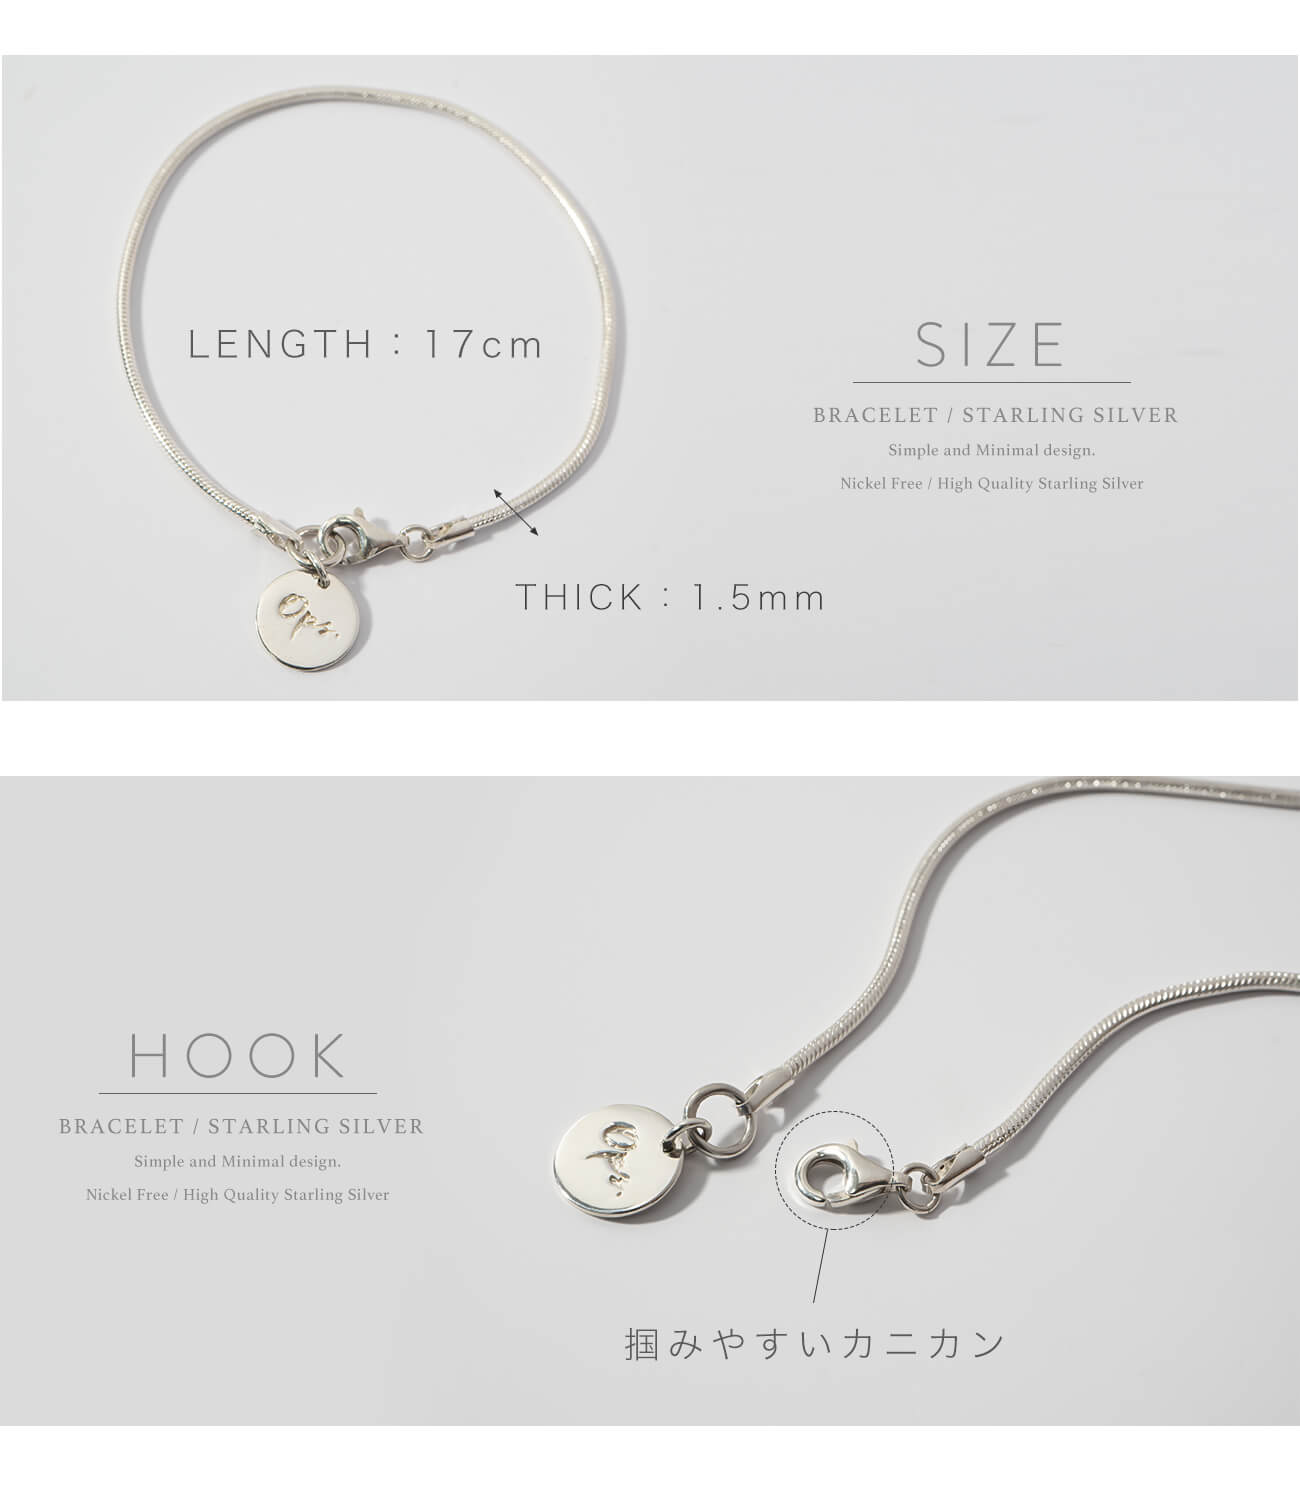 Silver925 Snake Chain Bracelet | VENEC-BR